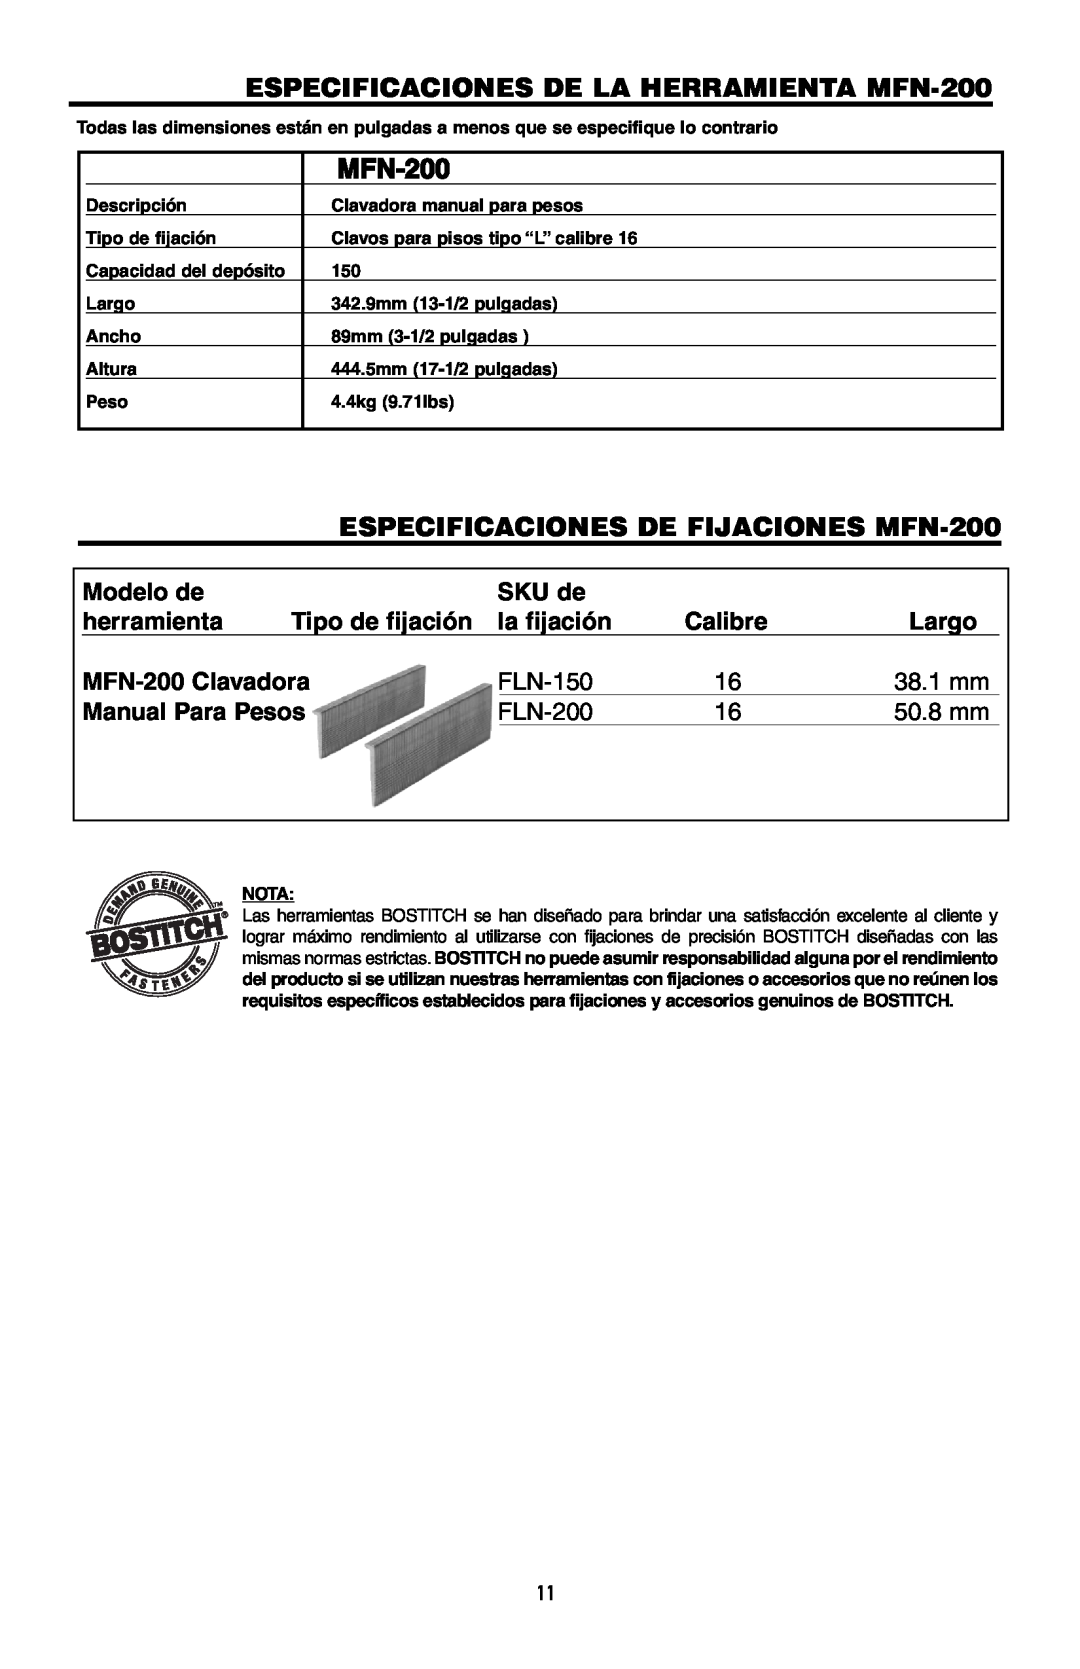 Intec manual ESPECIFICACIONES DE LA HERRAMIENTA MFN-200, ESPECIFICACIONES DE FIJACIONES MFN-200, Modelo de 